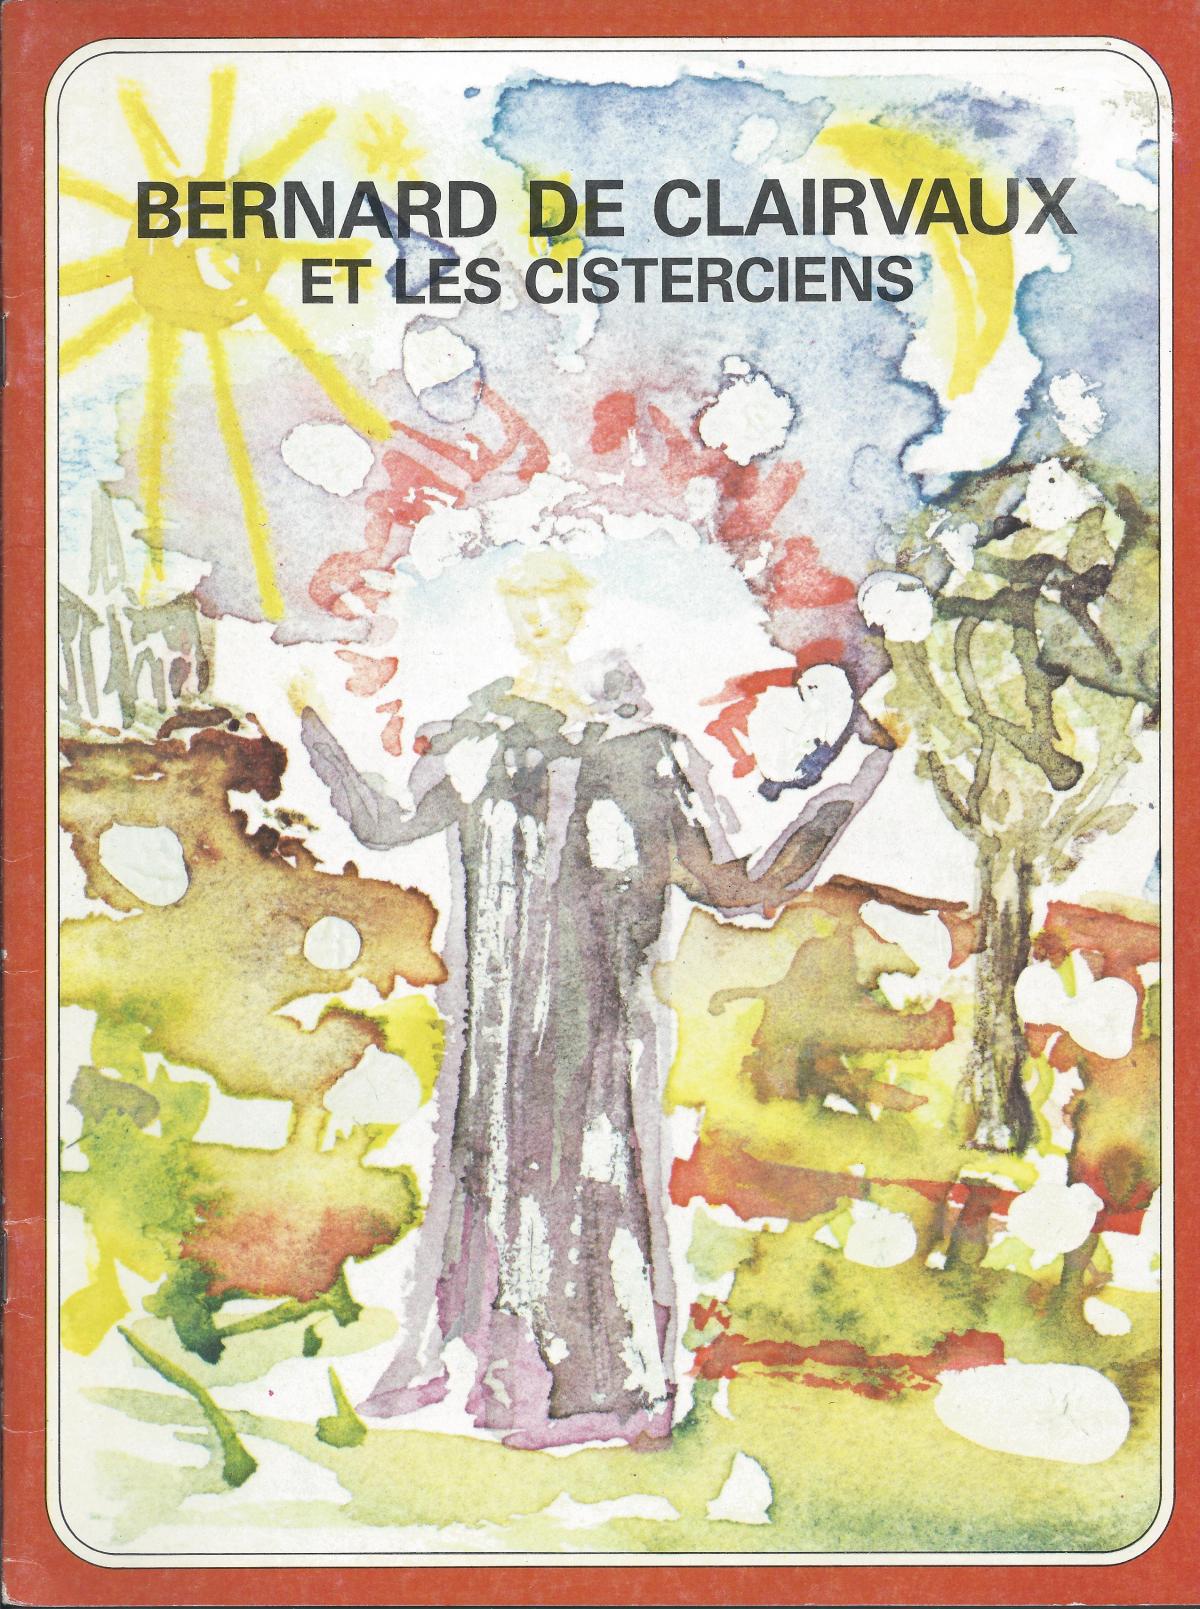 Bernard de Clairvaux et les Cisterciens